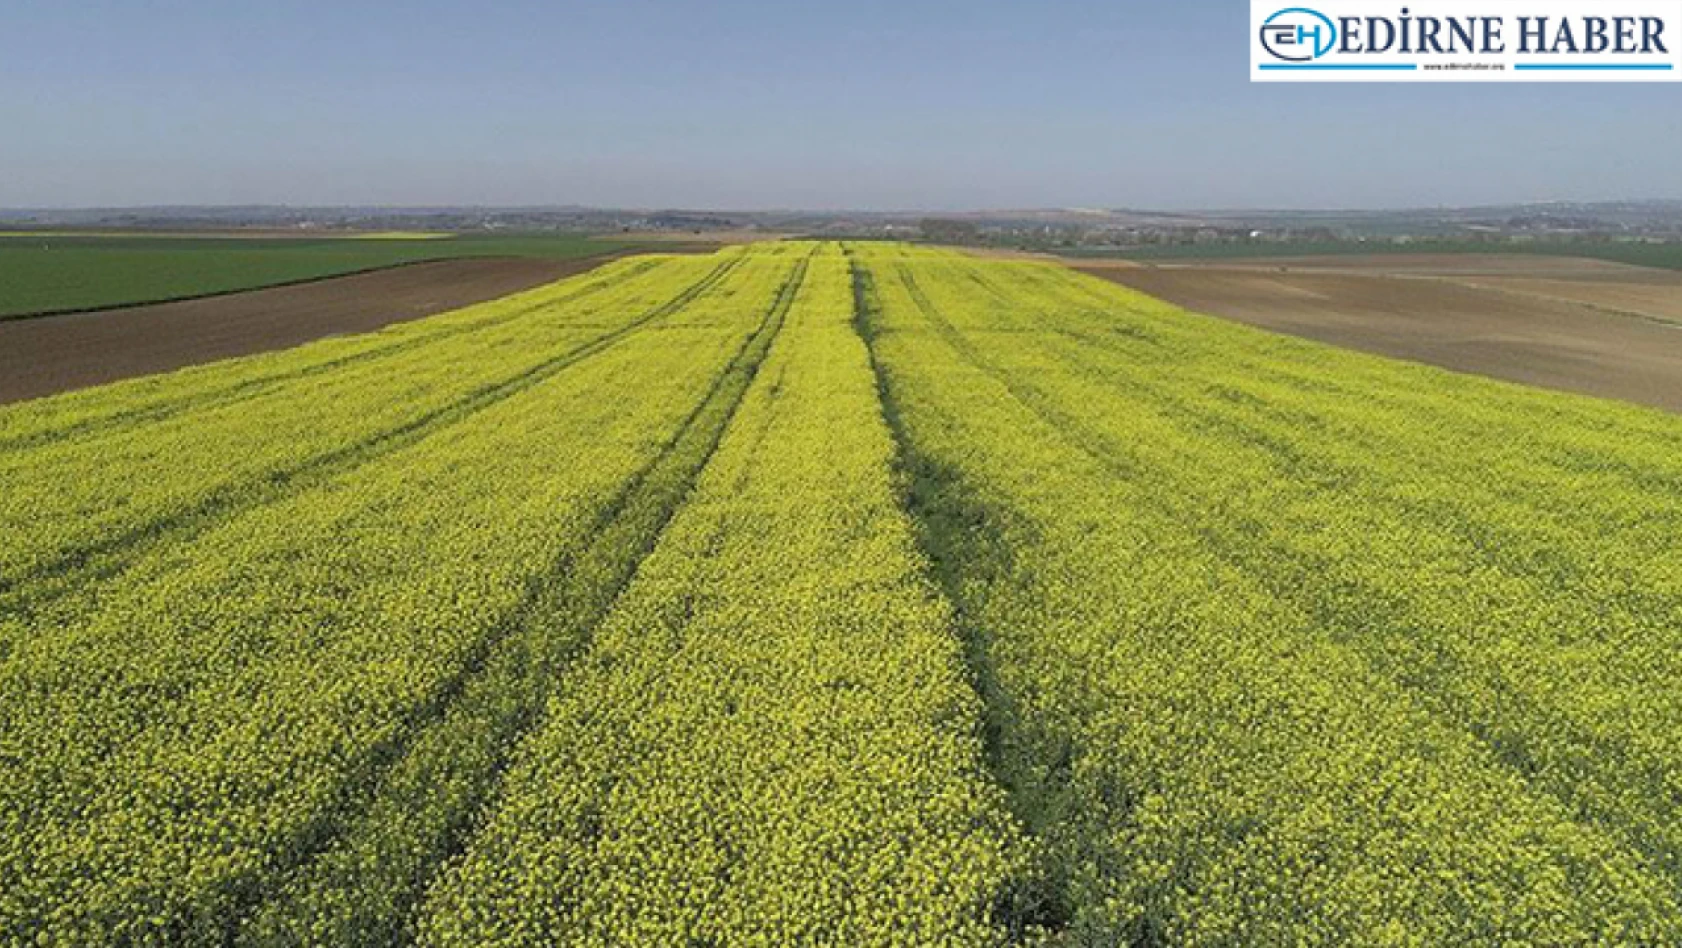 'Edirne'nin Sarı Çiçeği Kanola Projesi' kapsamında yüzde 75 hibeli kanola tohumu verilecek